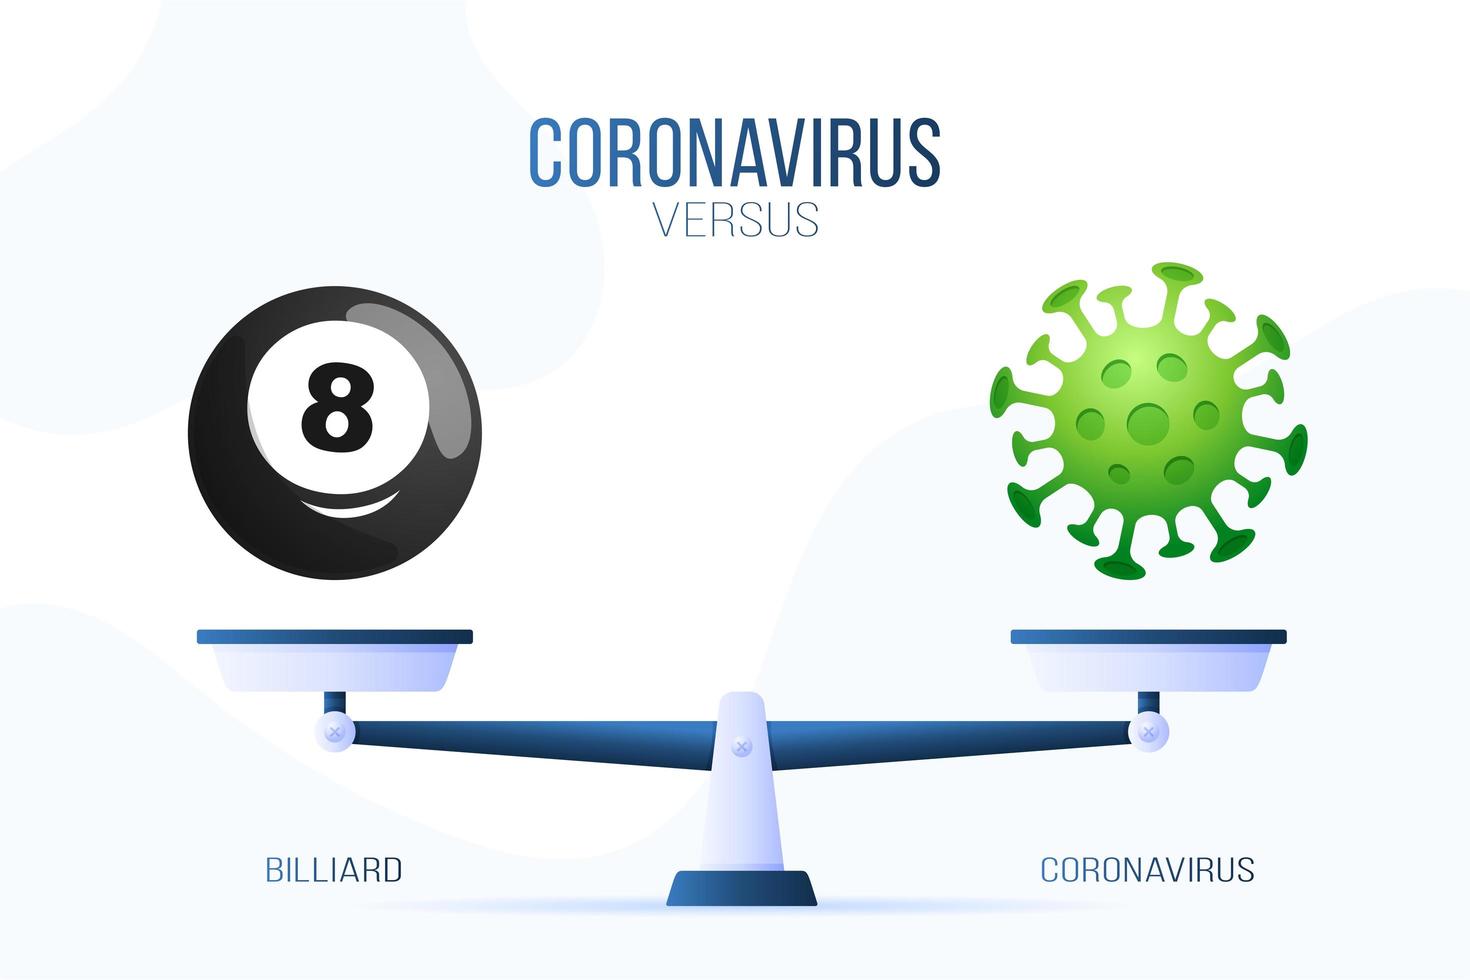 coronavírus ou ilustração vetorial de bilhar. conceito criativo de escalas e versus, de um lado da escala está o vírus covid-19 e do outro o ícone de uma bola de bilhar. ilustração vetorial plana. vetor